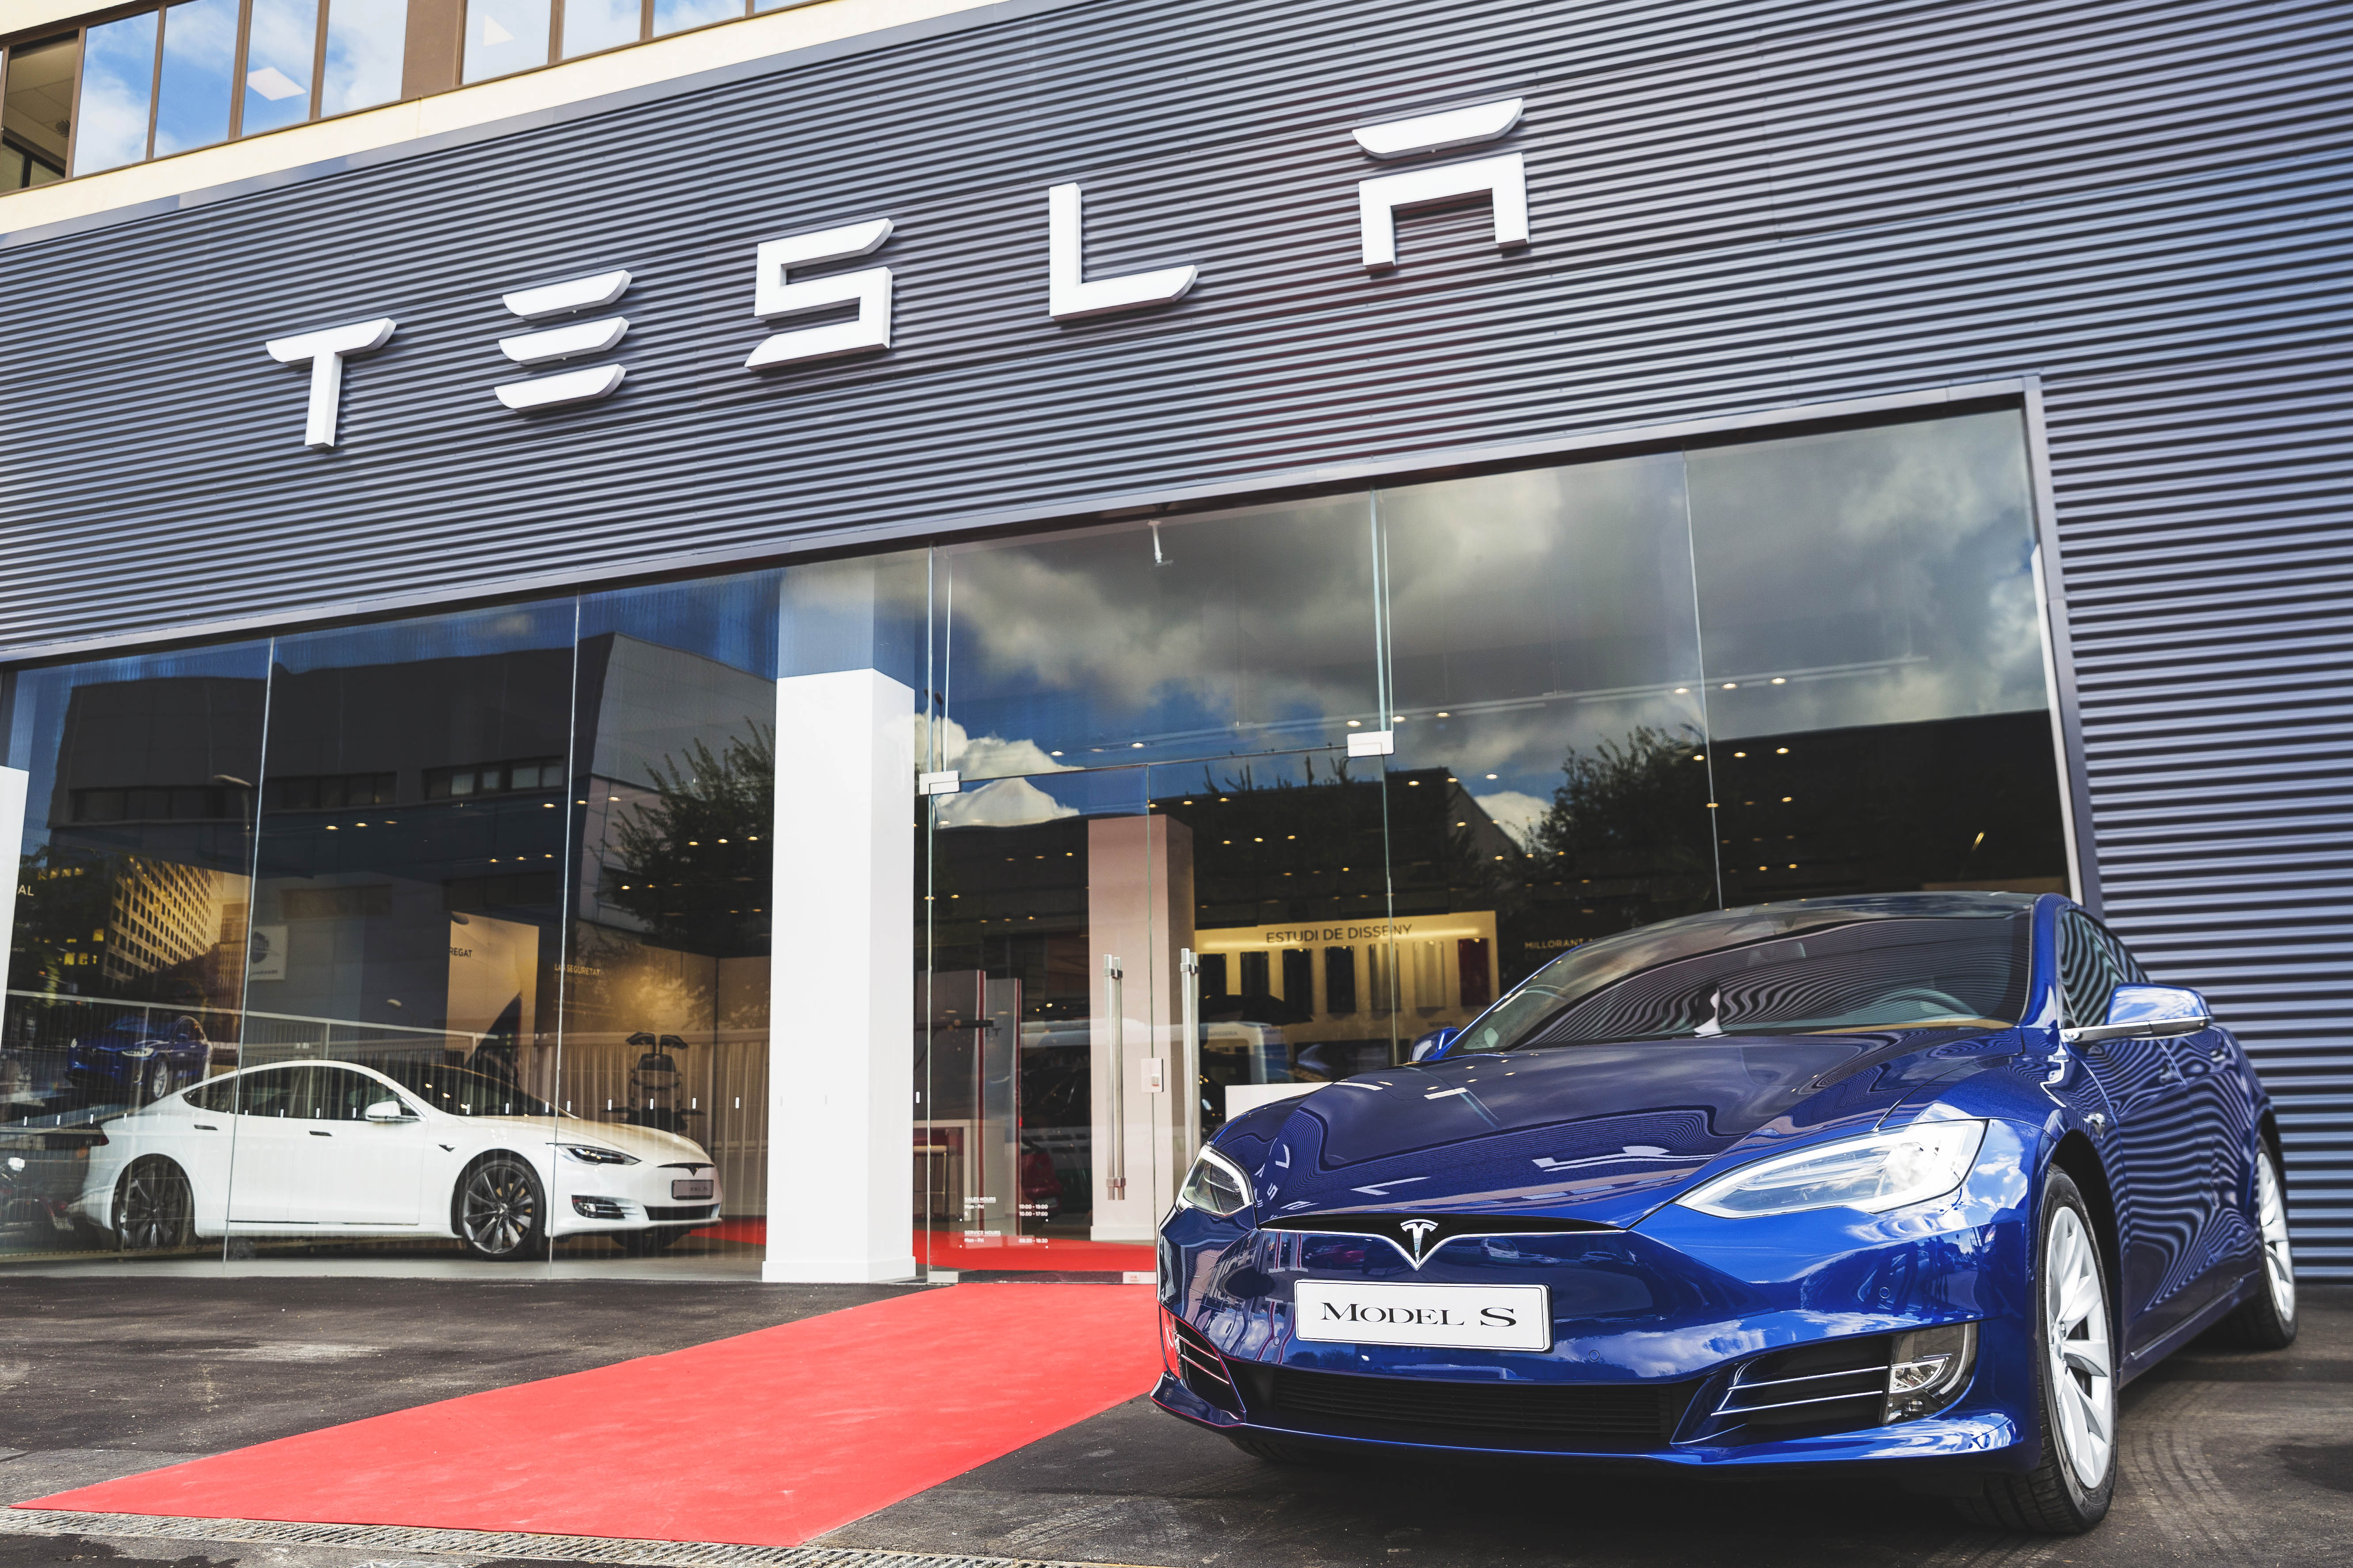 La revolución de Tesla llega a Barcelona con su primera tienda